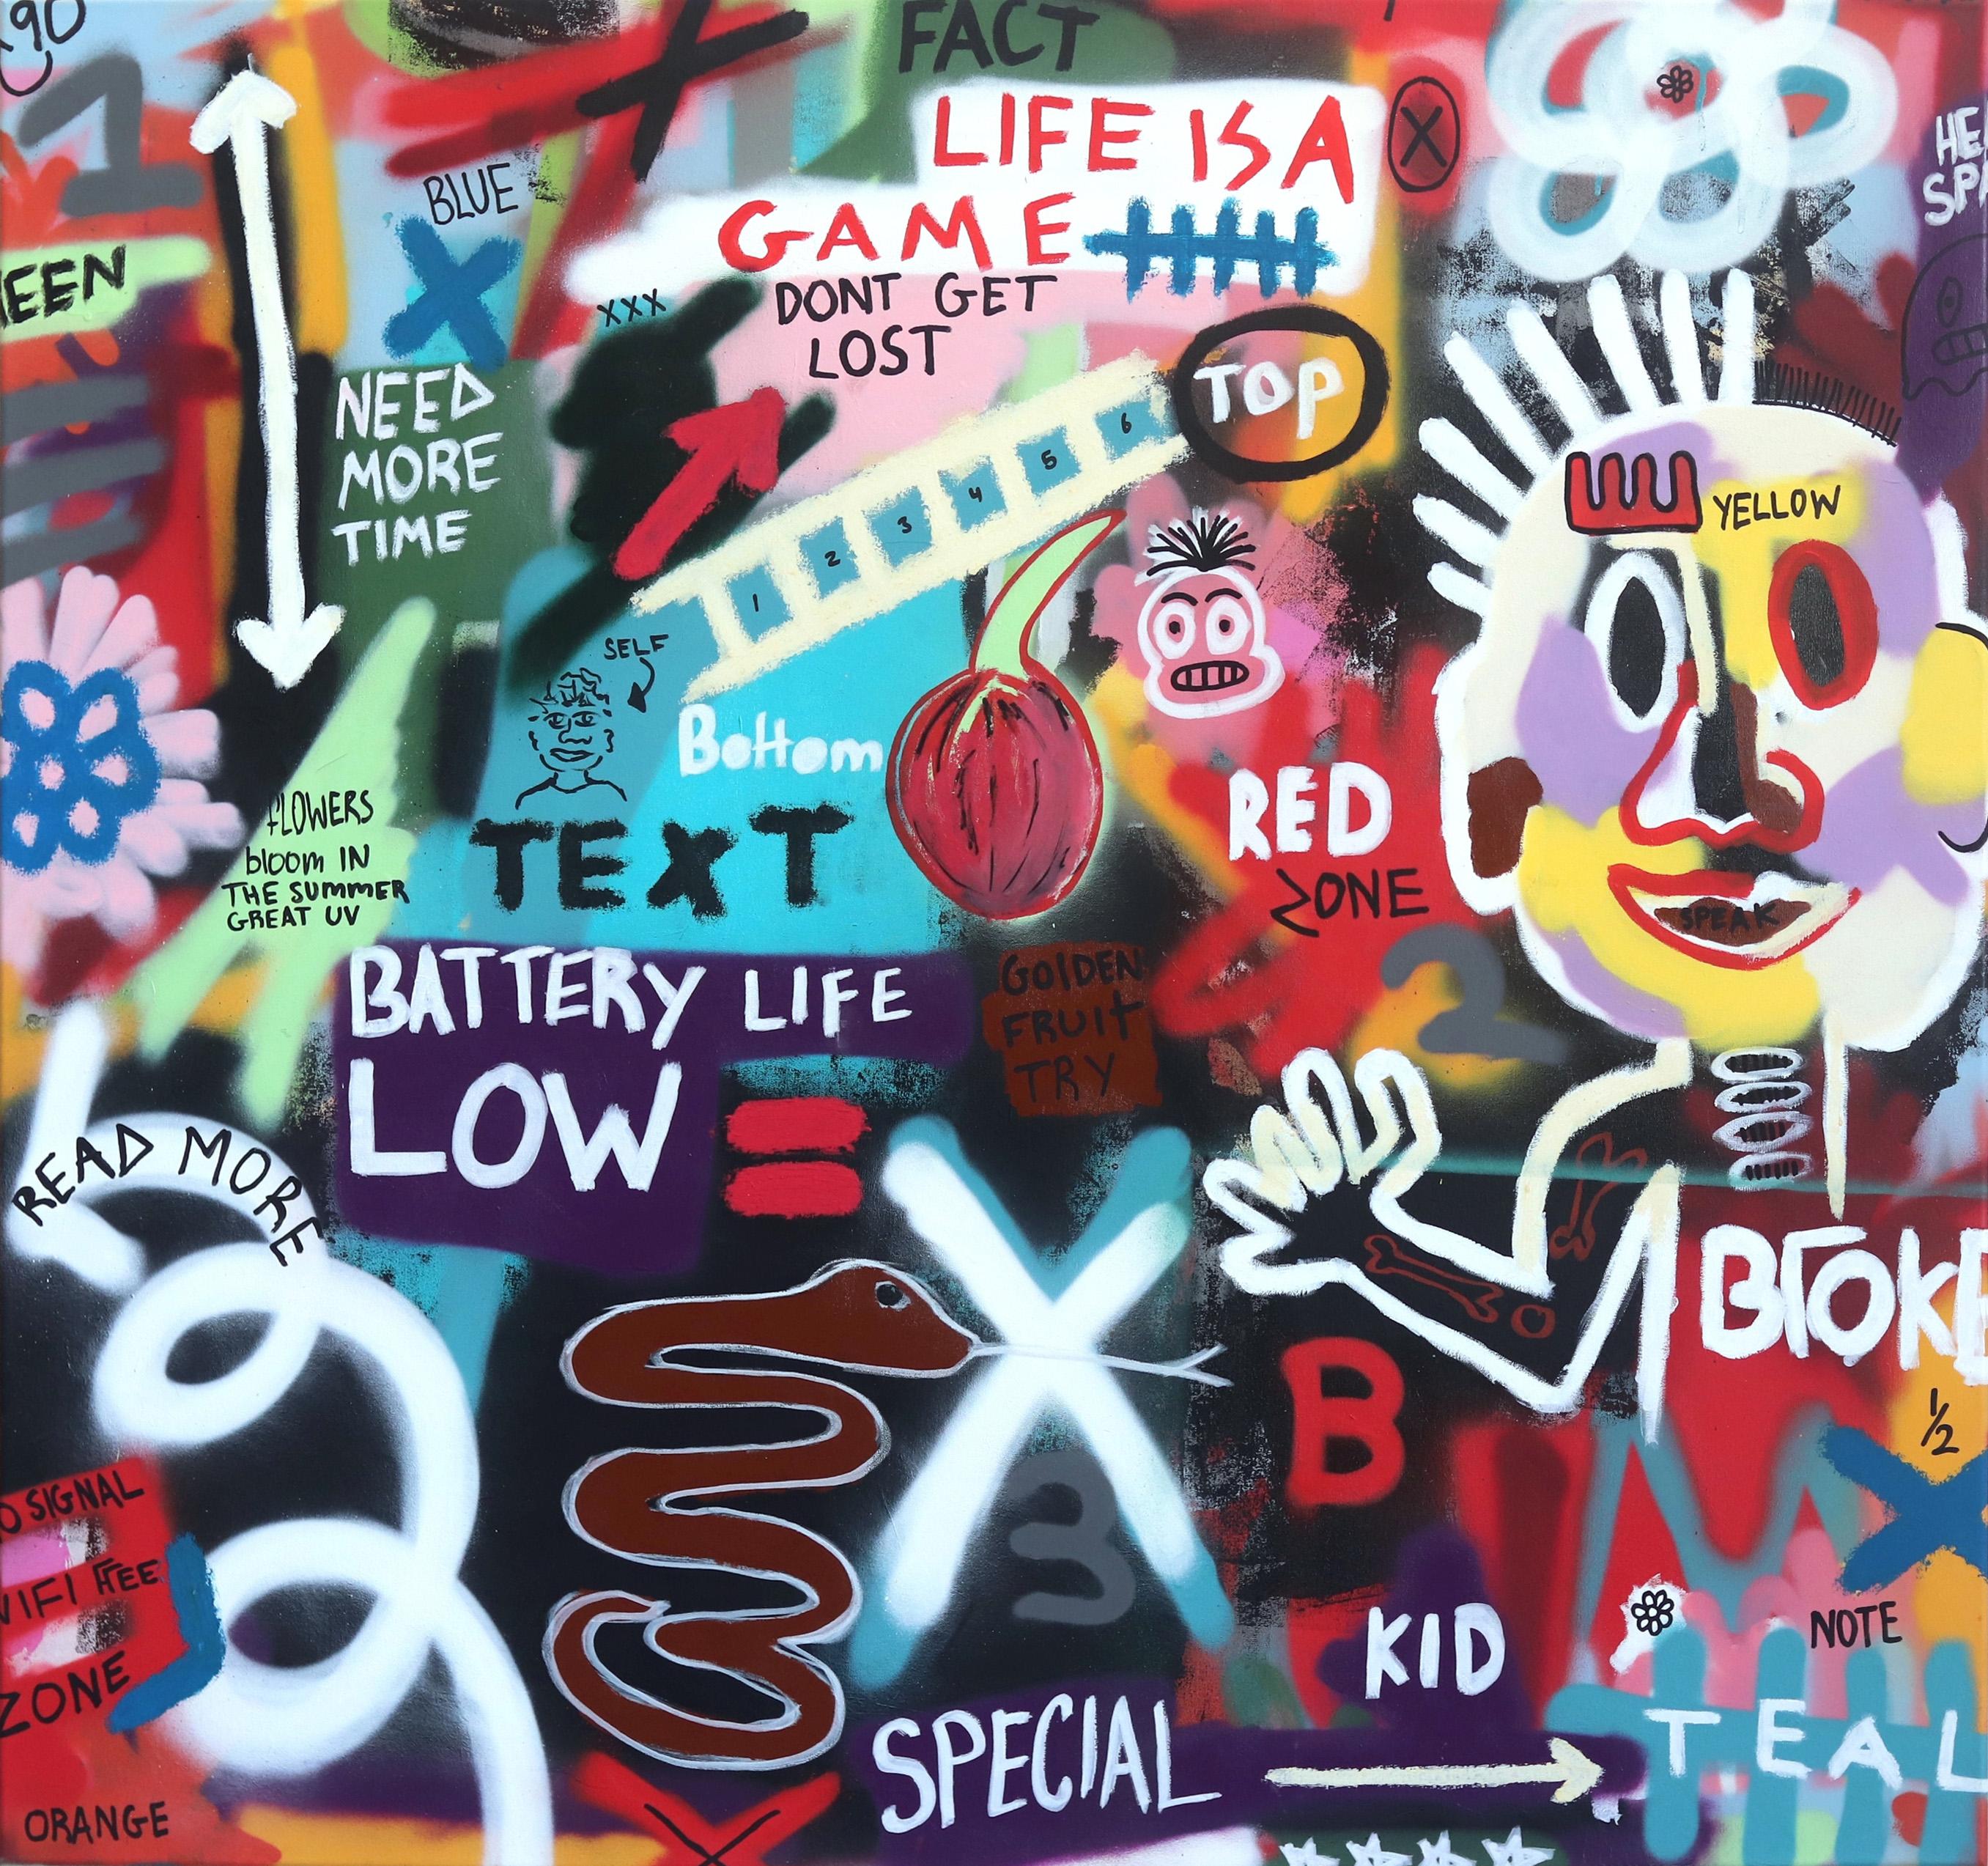 Life Is A Game - Grande peinture de rue contemporaine colorée, figures, texte